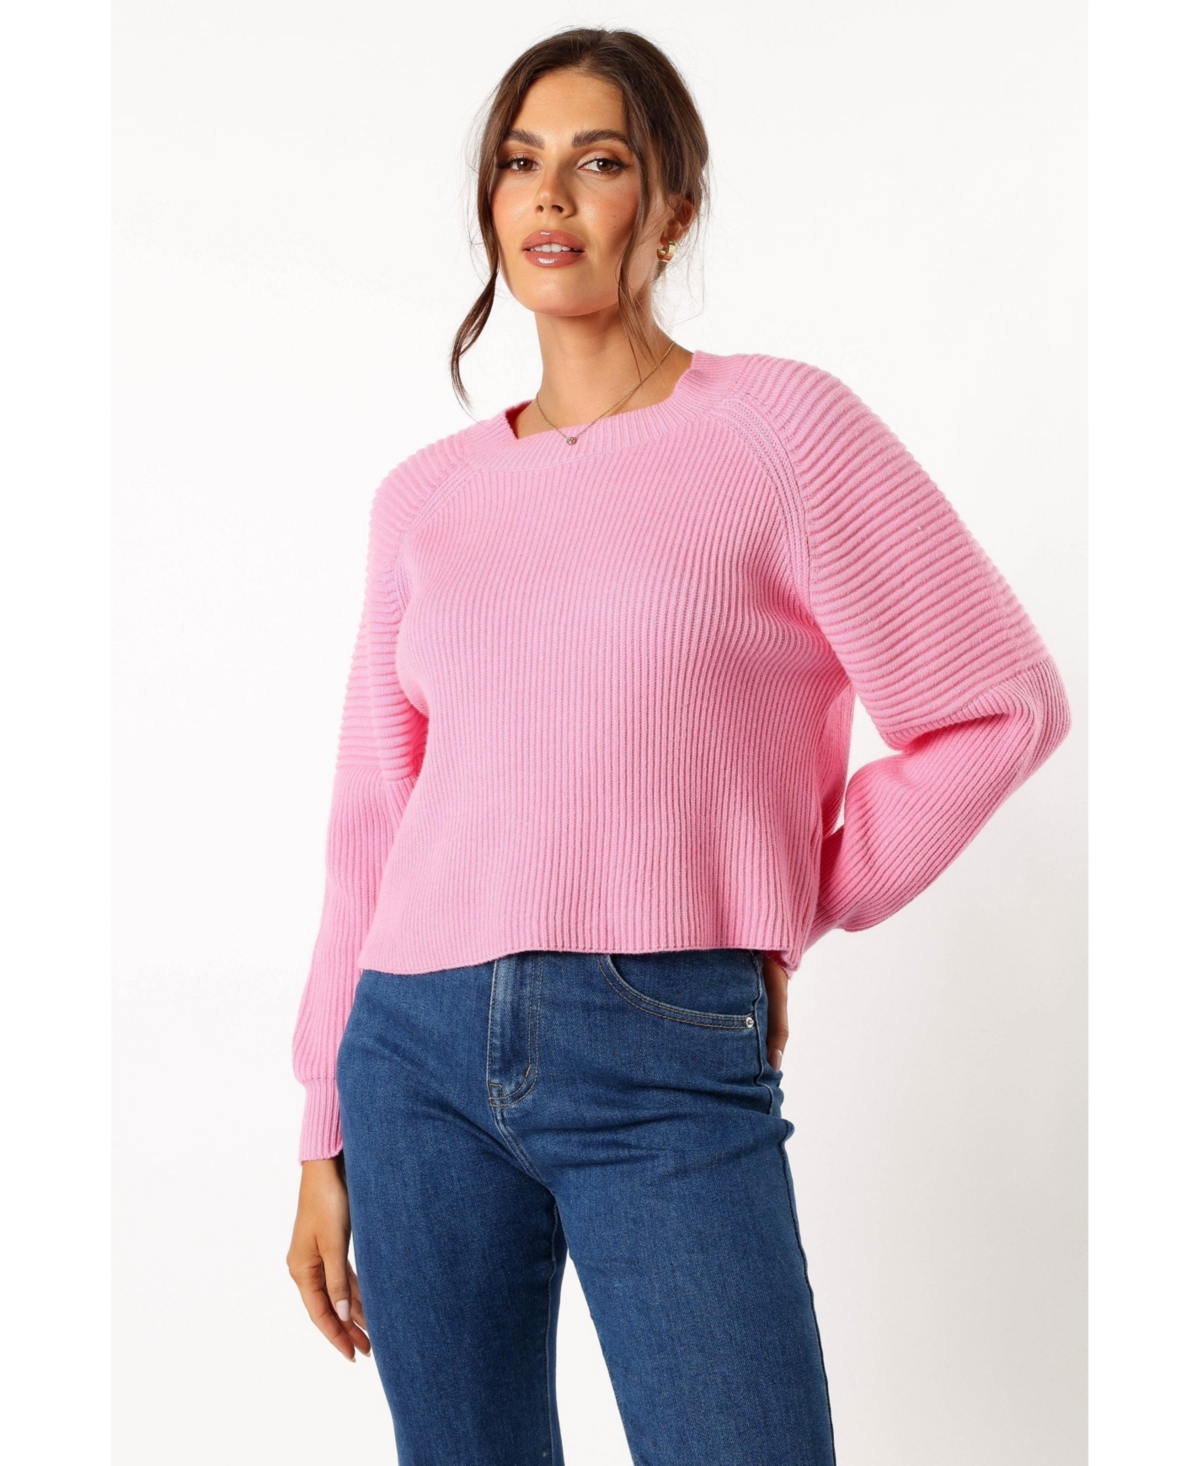 Women's Sarah Knit Sweater - Pink